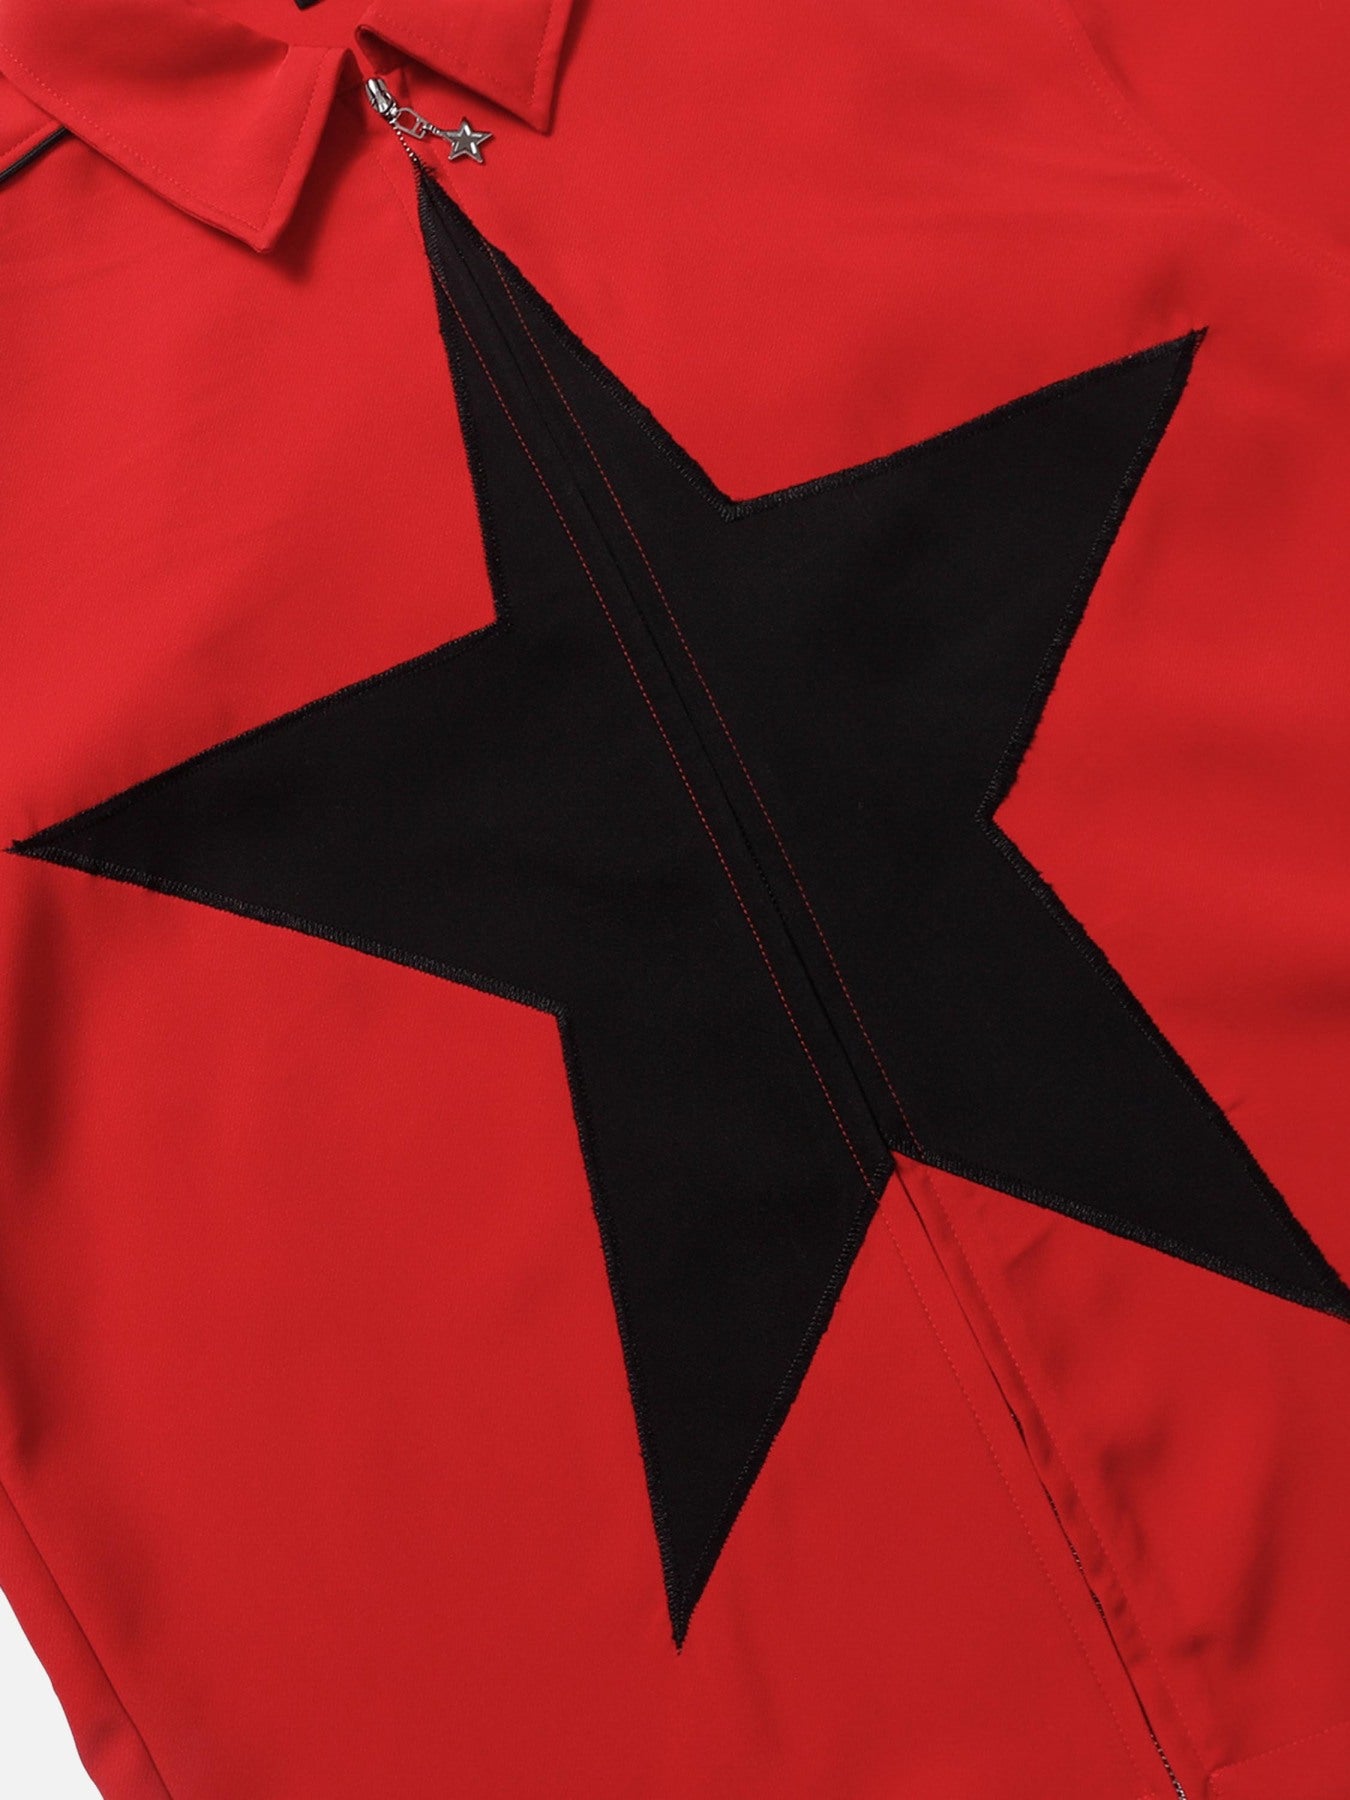 The Supermade Star Zipper Design Shirt -1575